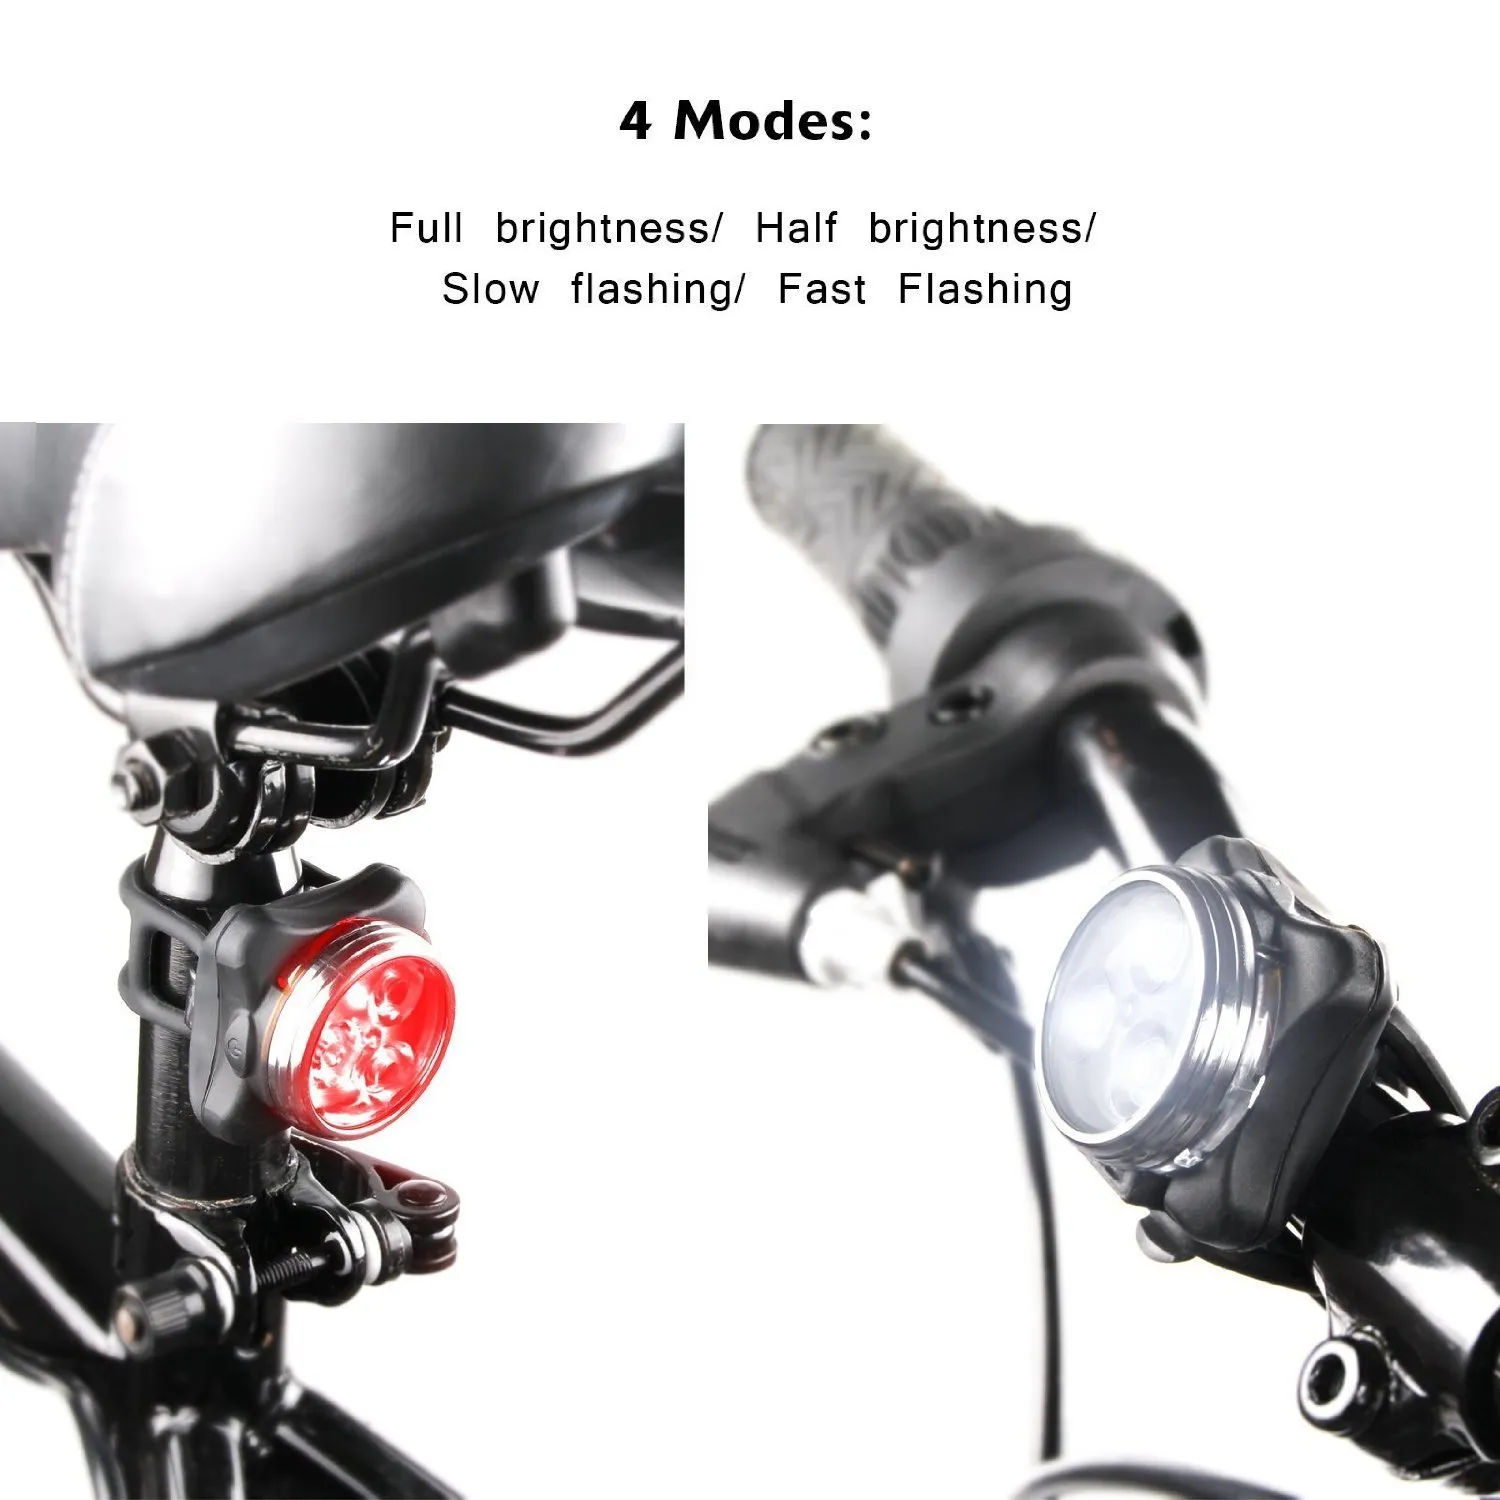 Aydınlatma şarj edilebilir far arka lambası kombinasyonları, ön ve arka bisiklet ışık seti, bisiklet ışıkları, 2 USB kablosu, 4 mod, 350LM, su içerir